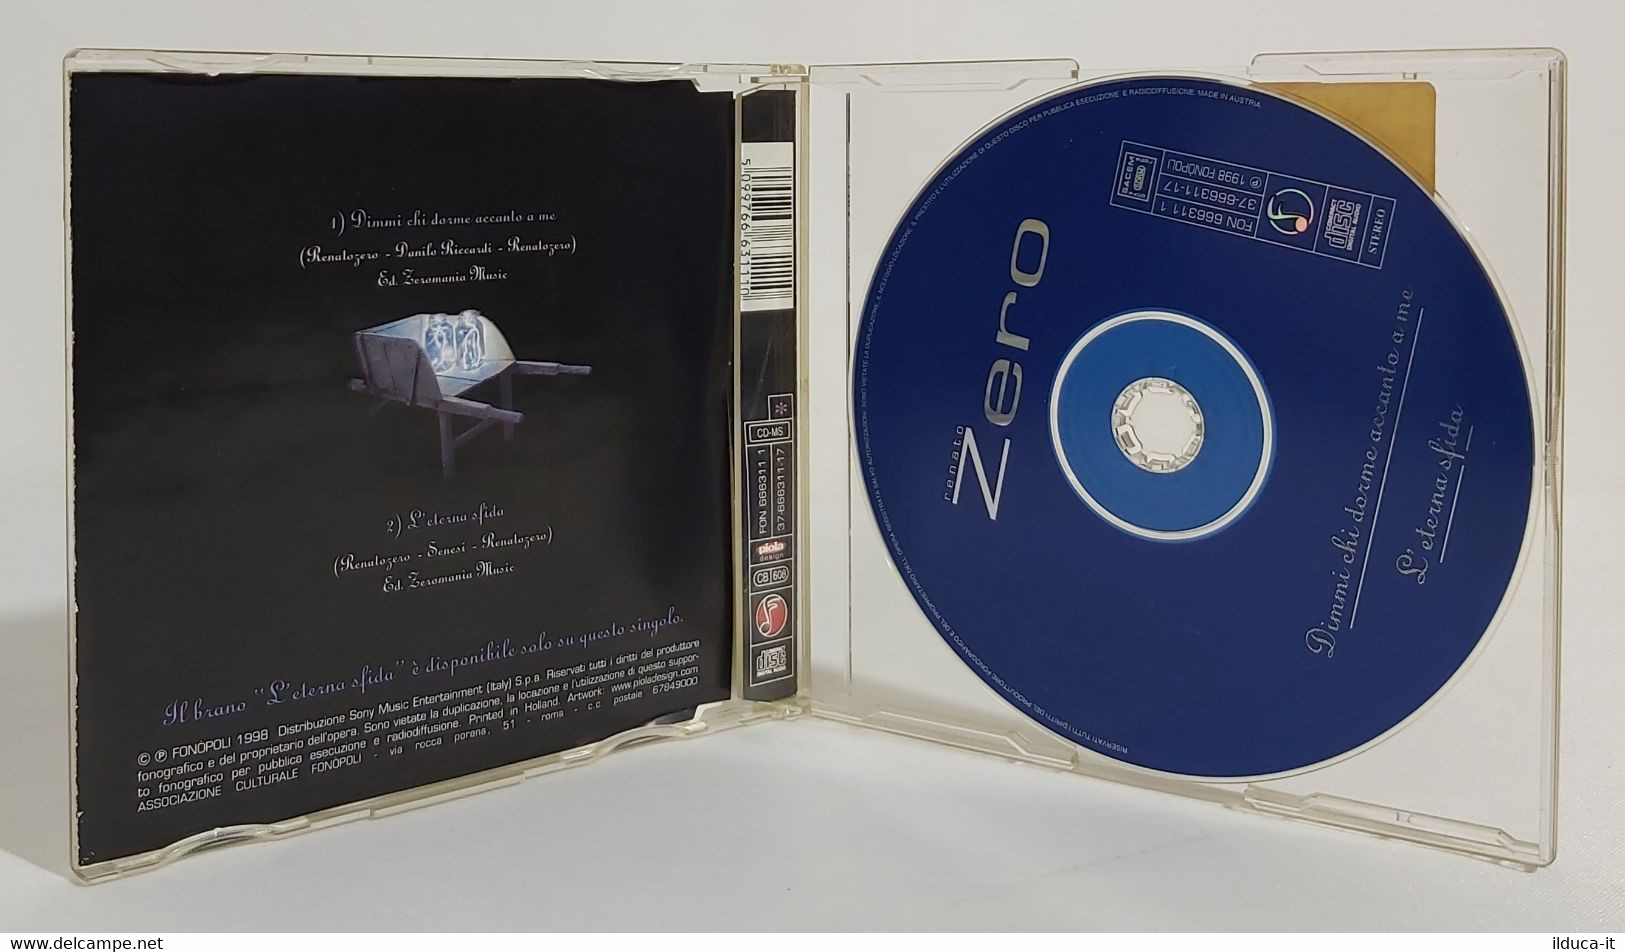 I102273 CD Single - Renato Zero - Dimmi Chi Dorme Accanto A Me / Eterna Sfida - Sonstige - Italienische Musik